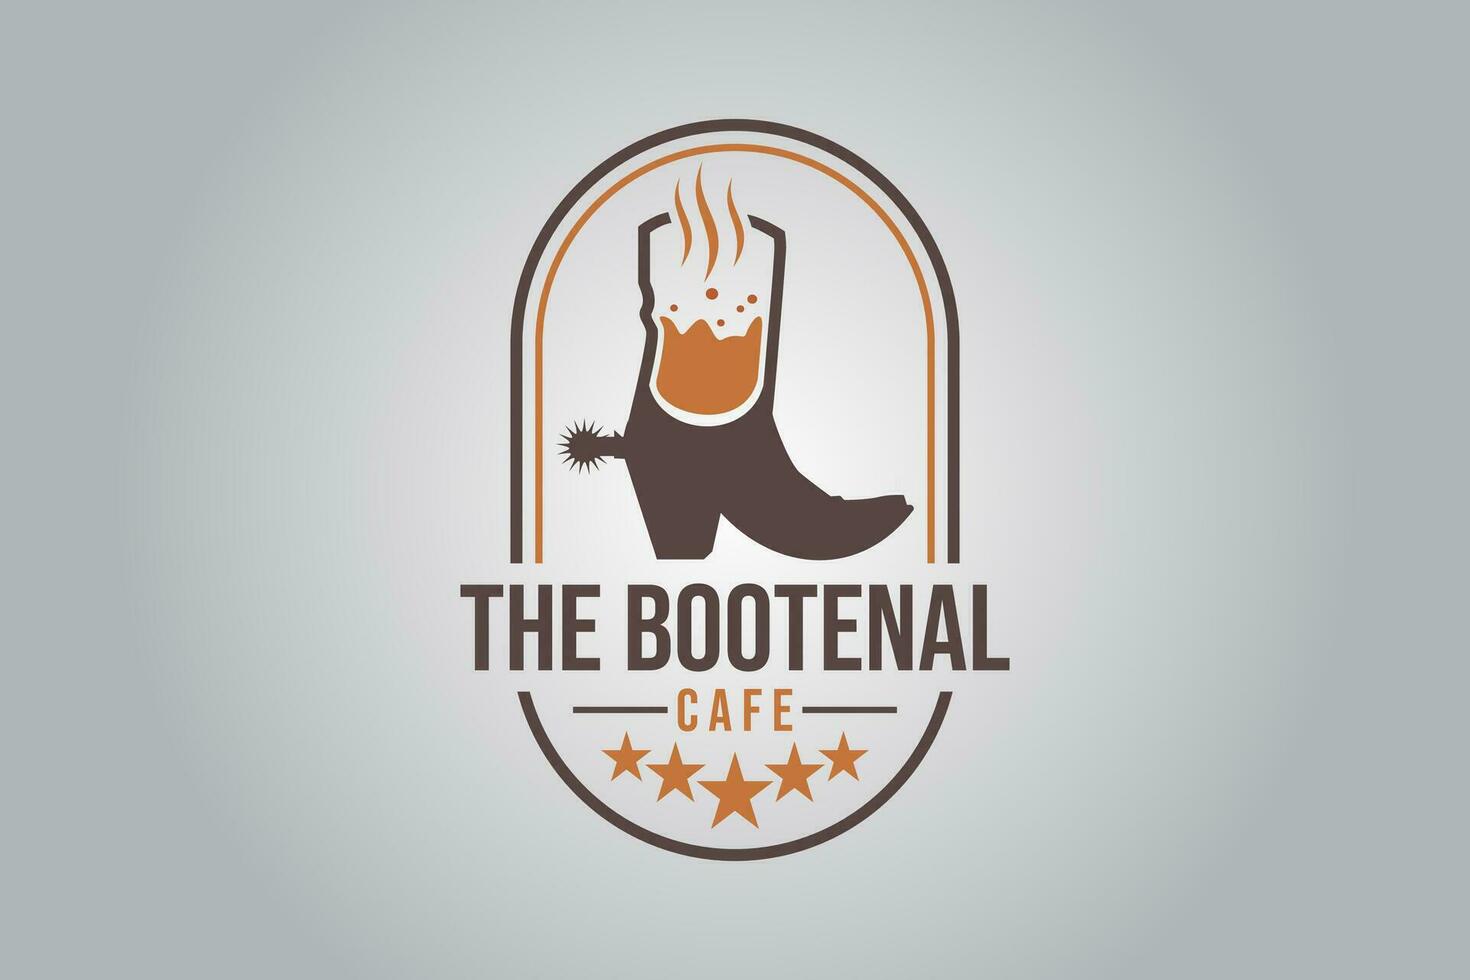 Bootenal cafe restauran logo design template element vector